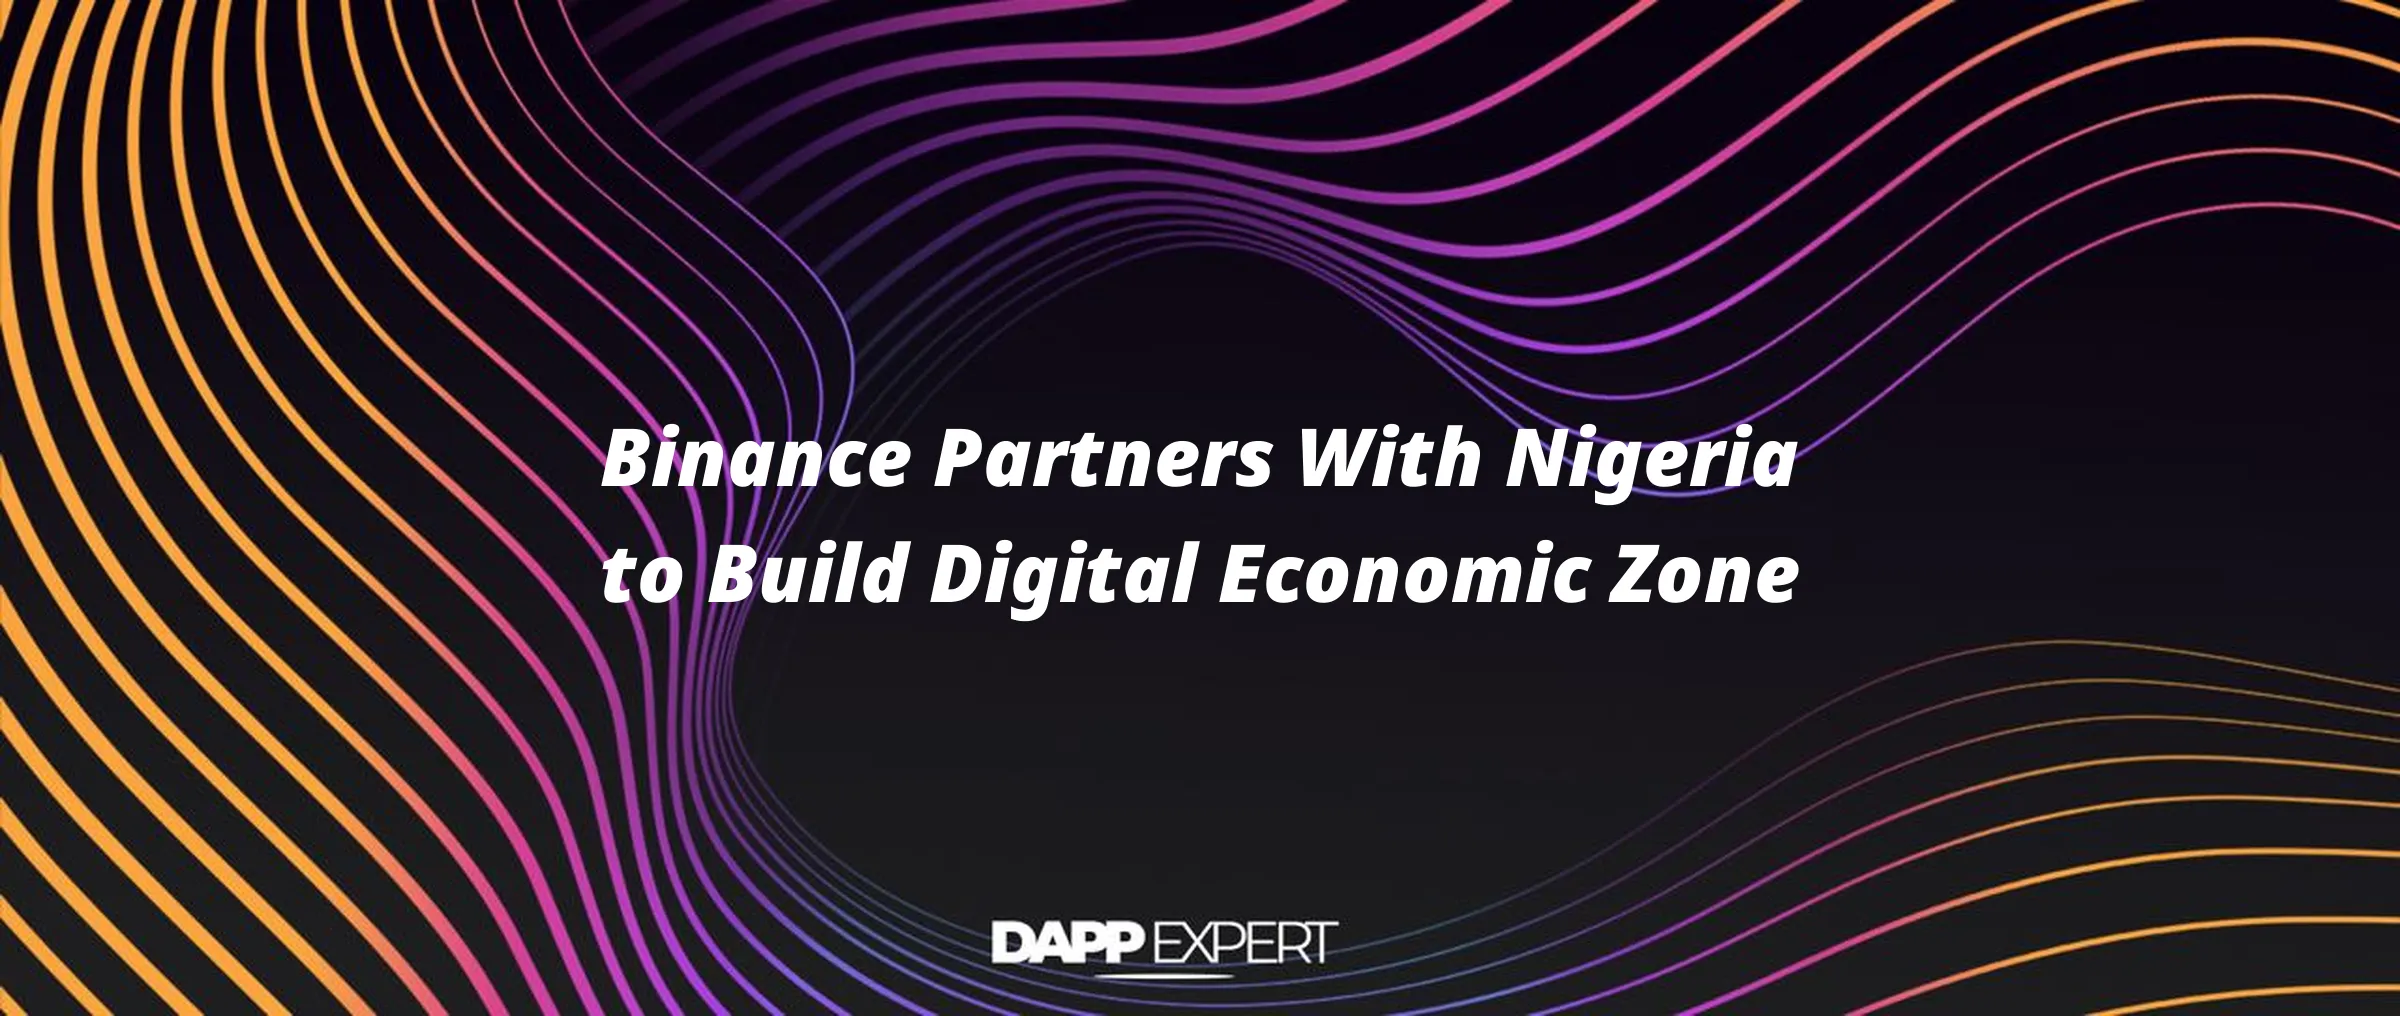 Binance Partners With Nigeria to Build Digital Economic Zone